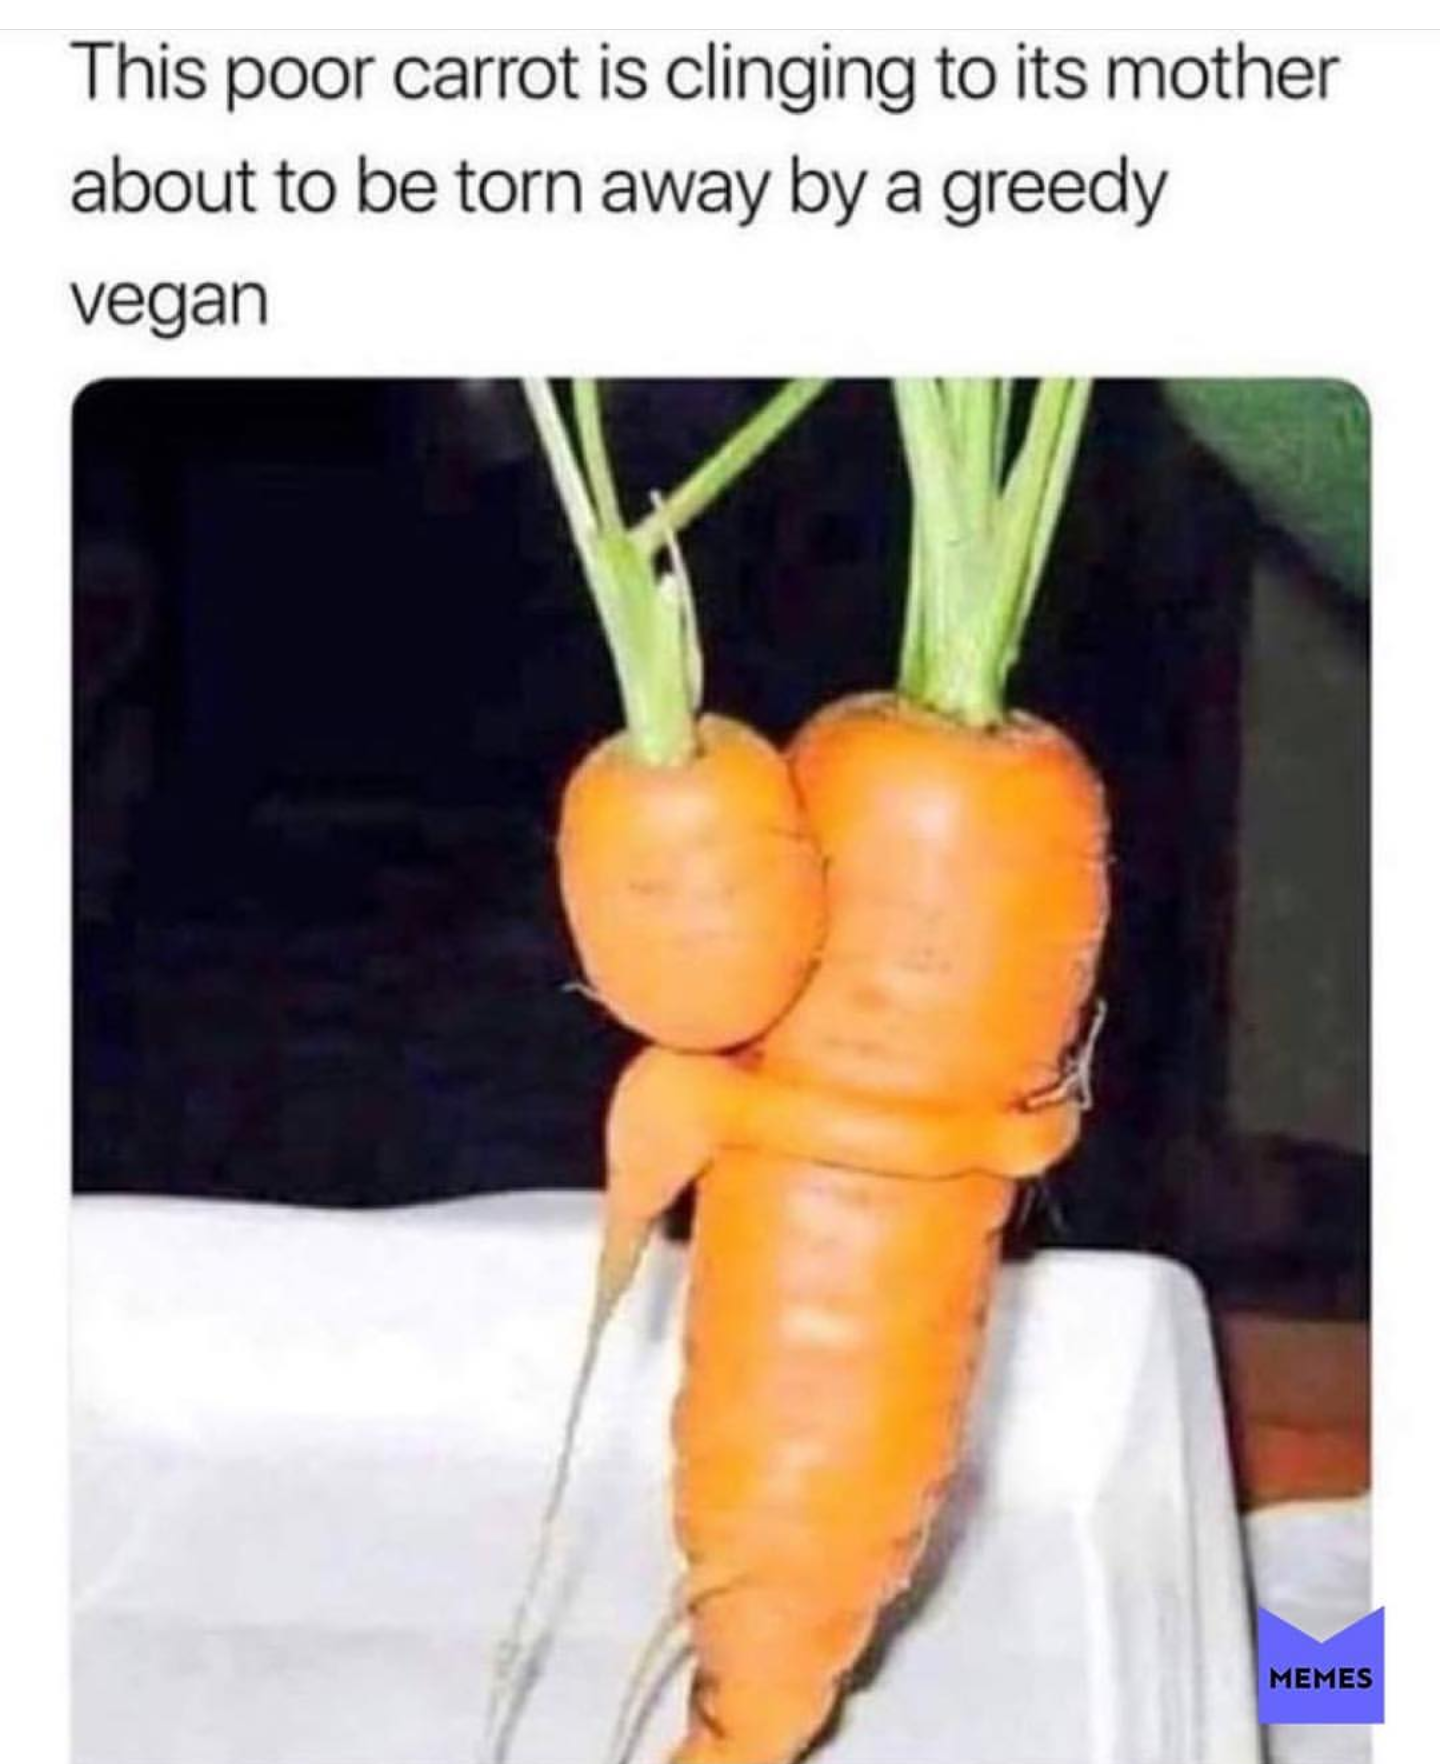 Poor carrot